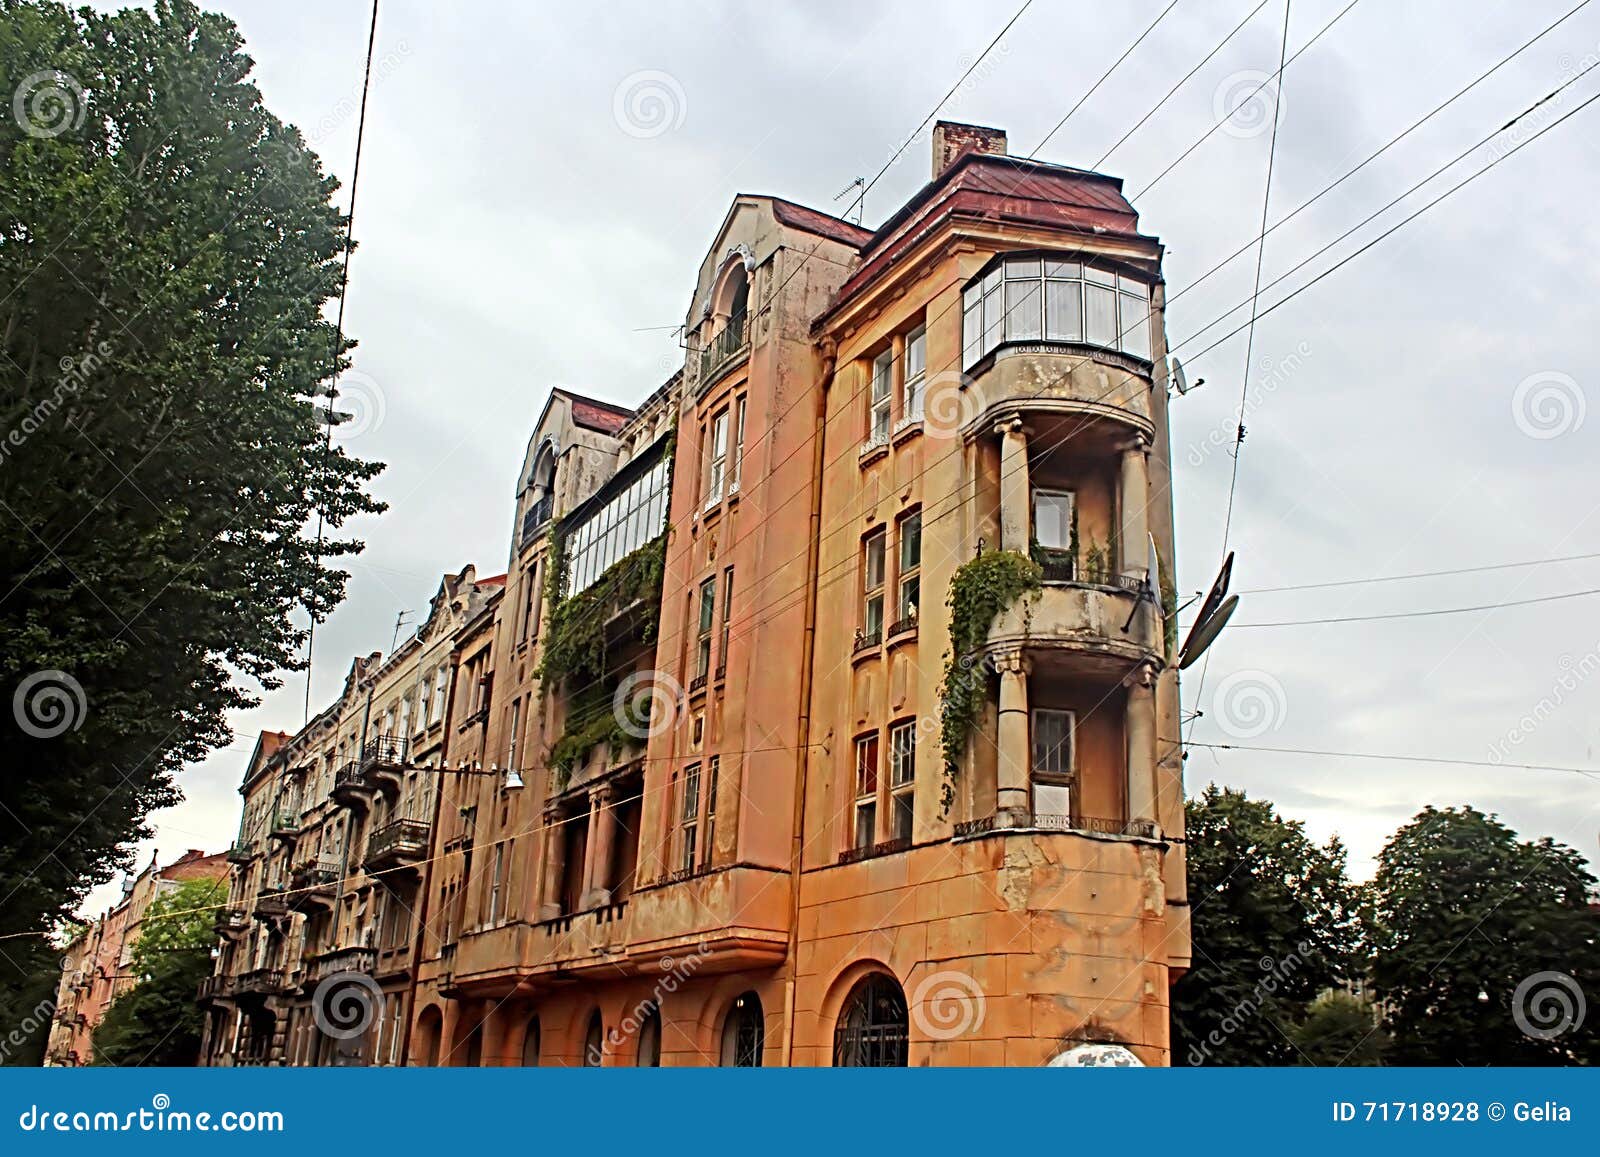 skinny building on bandera street, lviv, ukraine